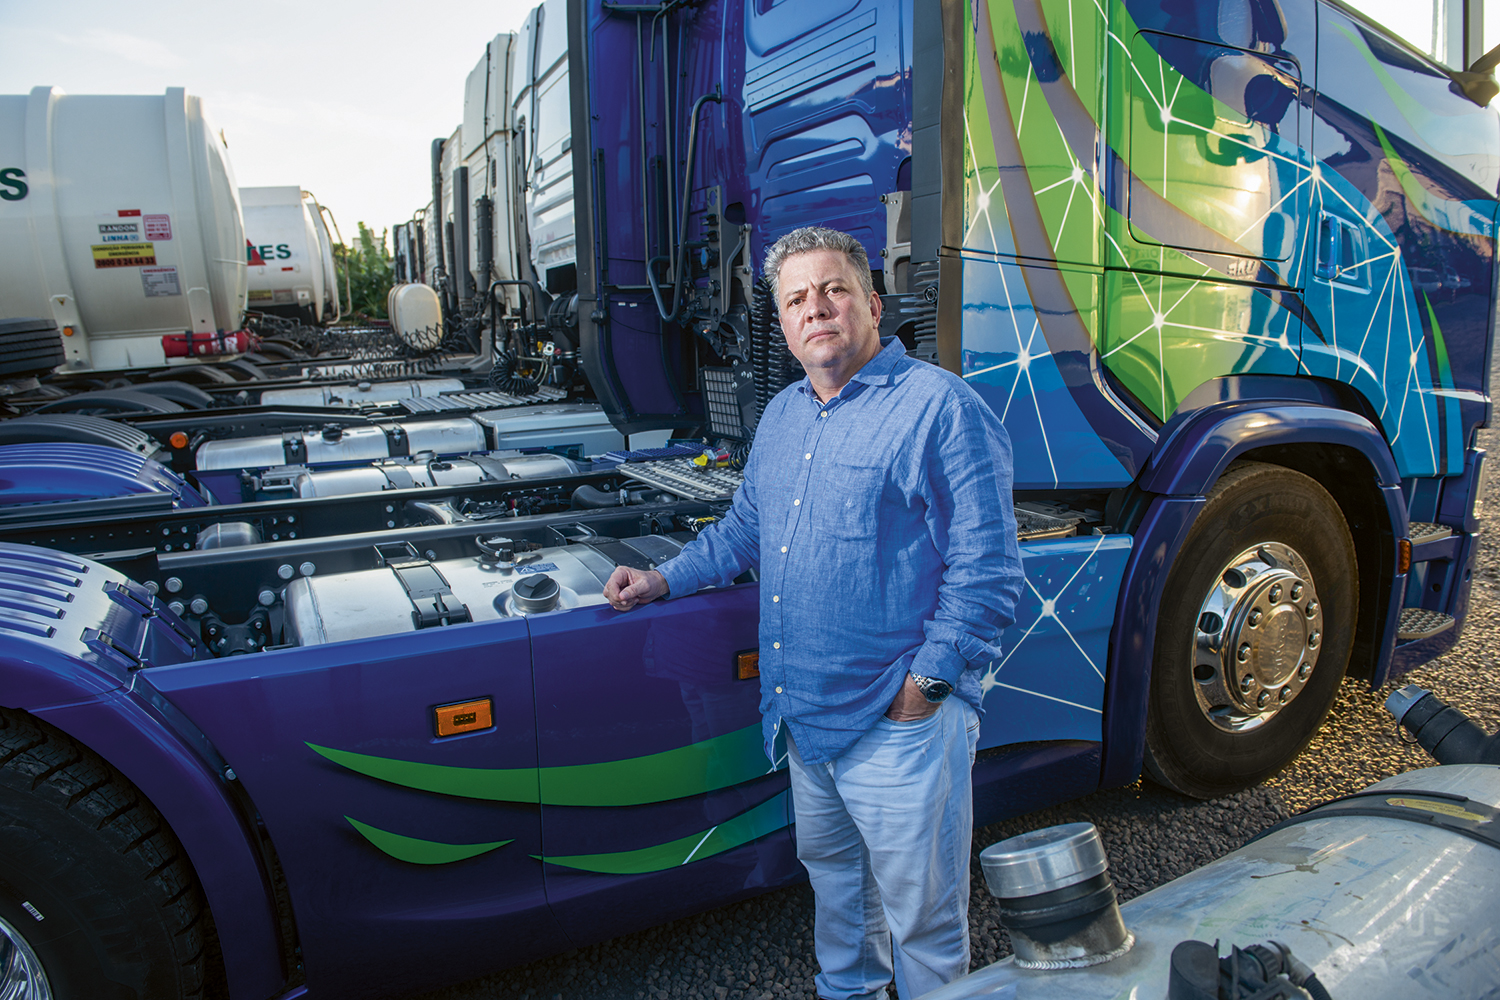 PLANOS ENGAVETADOS - Dono de uma frota de cinquenta caminhões, Vanderlei Carlos teve prejuízo de 17% de seu faturamento e cancelou a compra de quinze novos veículos que já haviam sido encomendados -